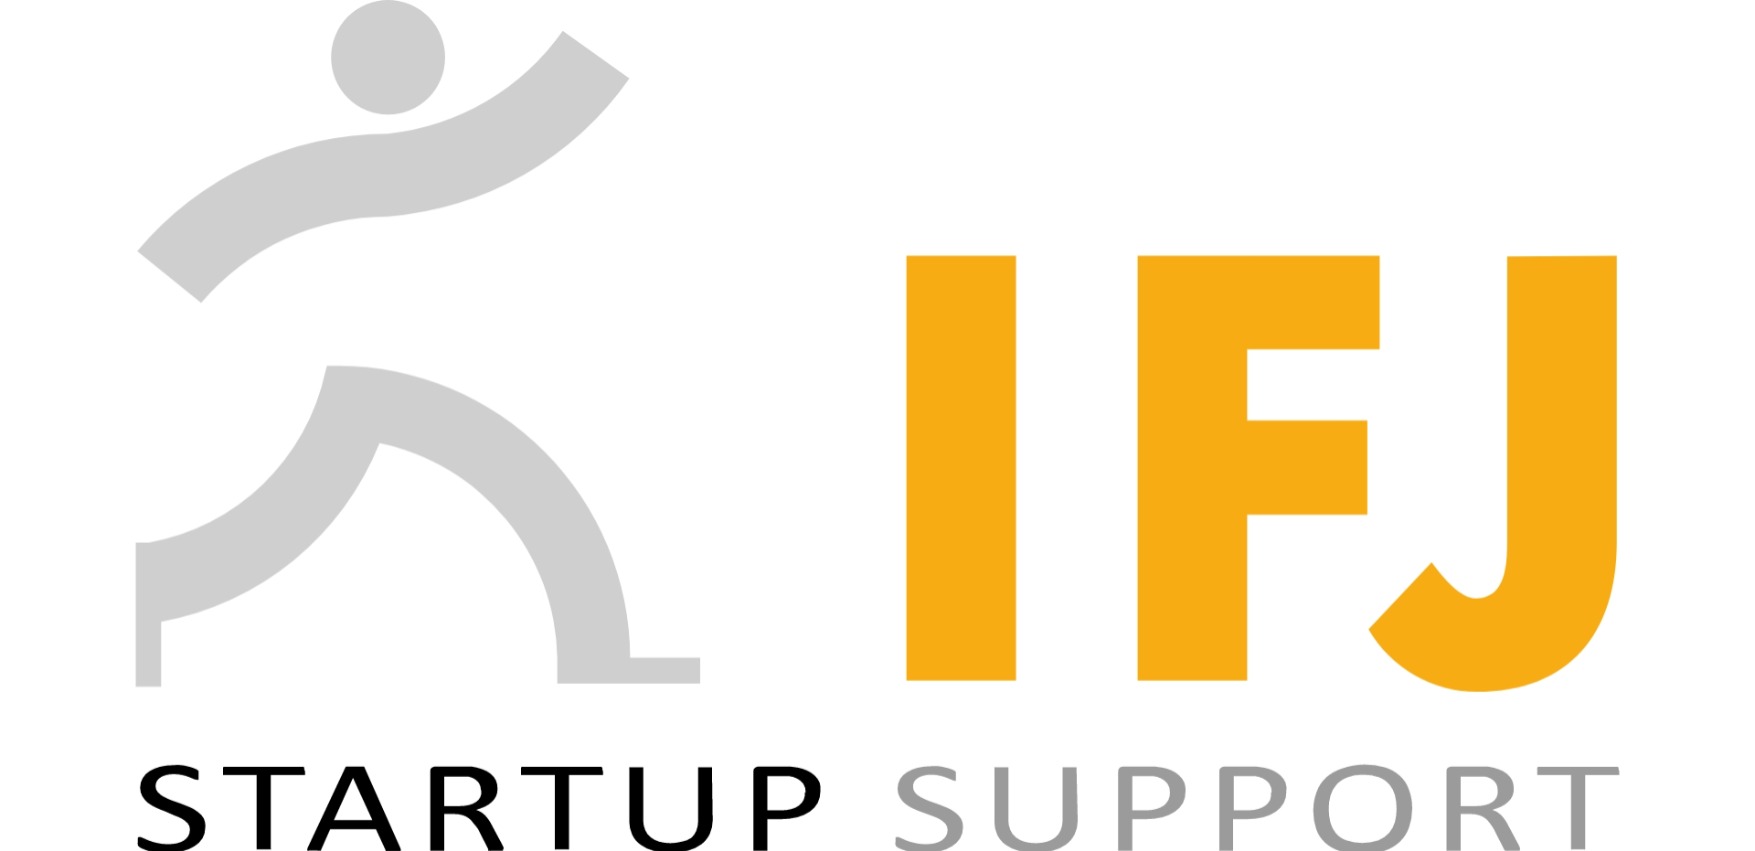 IFJ Institut für Jungunternehmen AG